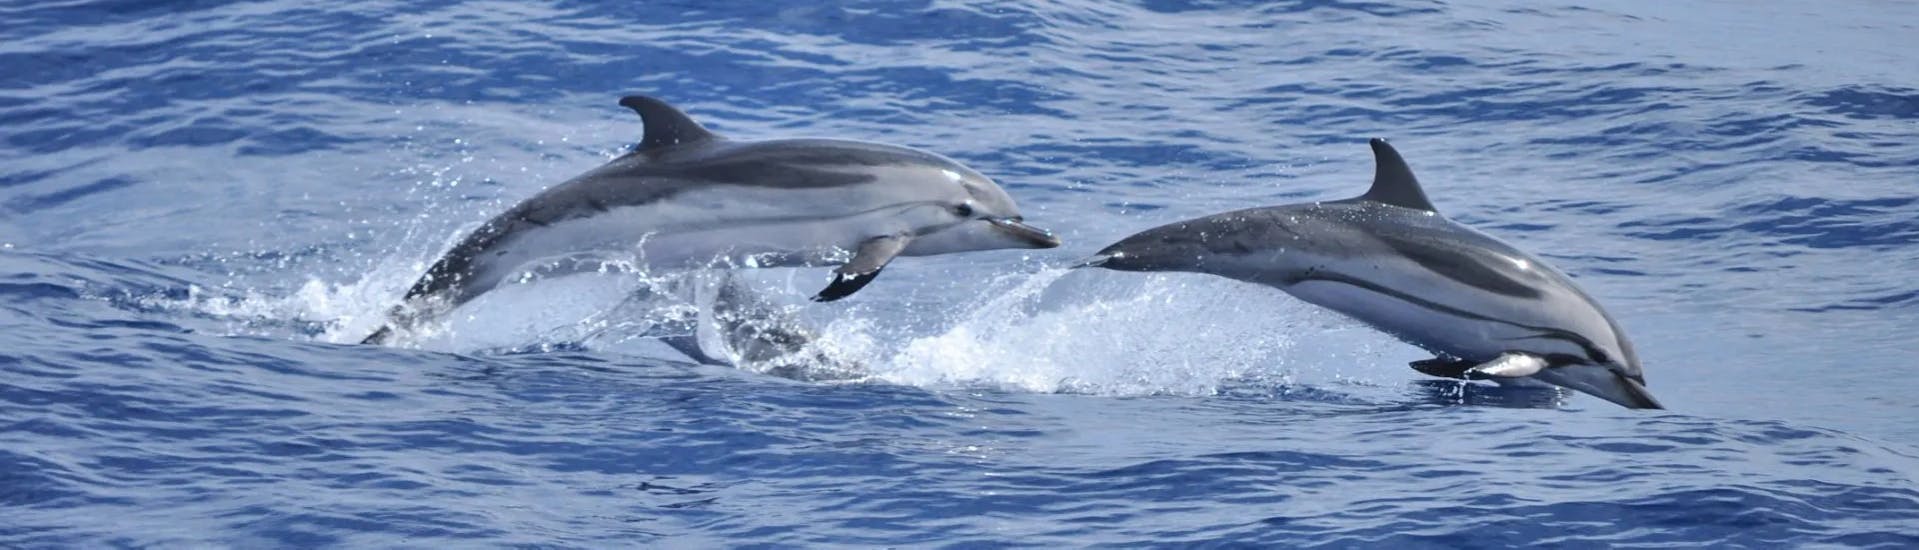 Delfine springen während der RIB-Bootstour zur Insel Figarolo mit Delfinbeobachtung mit Blue Deep Tours Golfo Aranci.